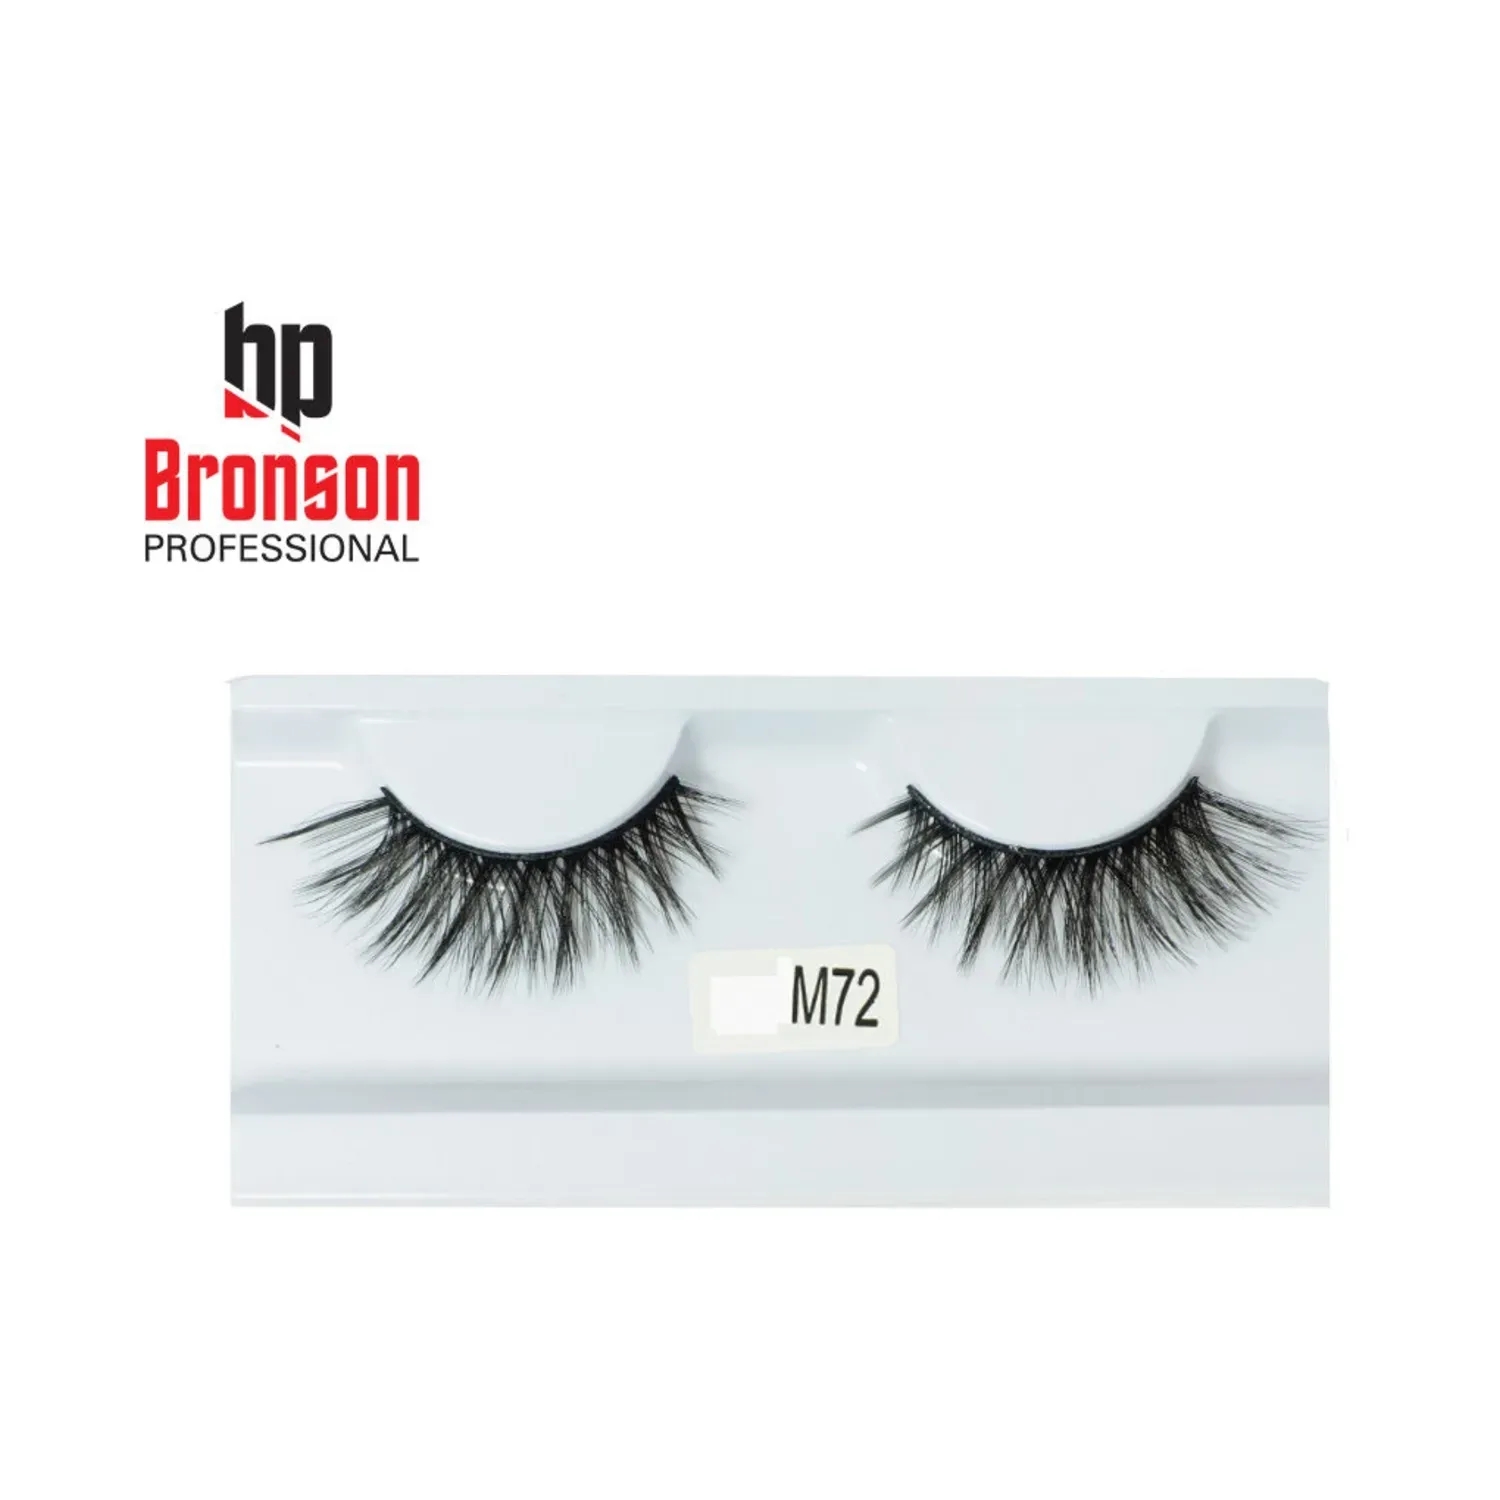 Bronson Professional | Bronson Professional 3D Eyelashes - M72 Black (1 Pair)